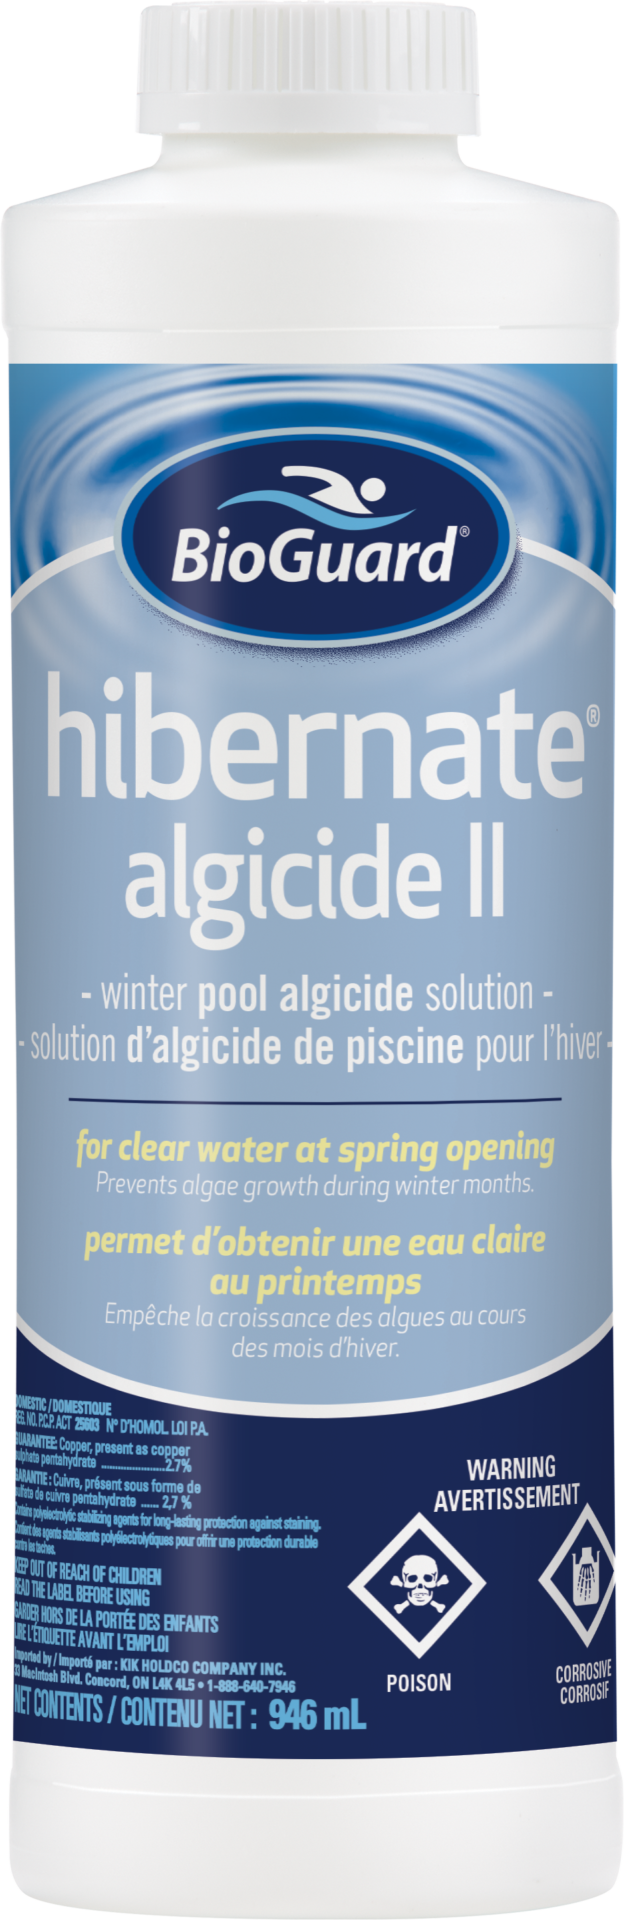 BioGuard Hibernate Algicide II 946ml - HIBERNATE ALGICIDE II -946ml